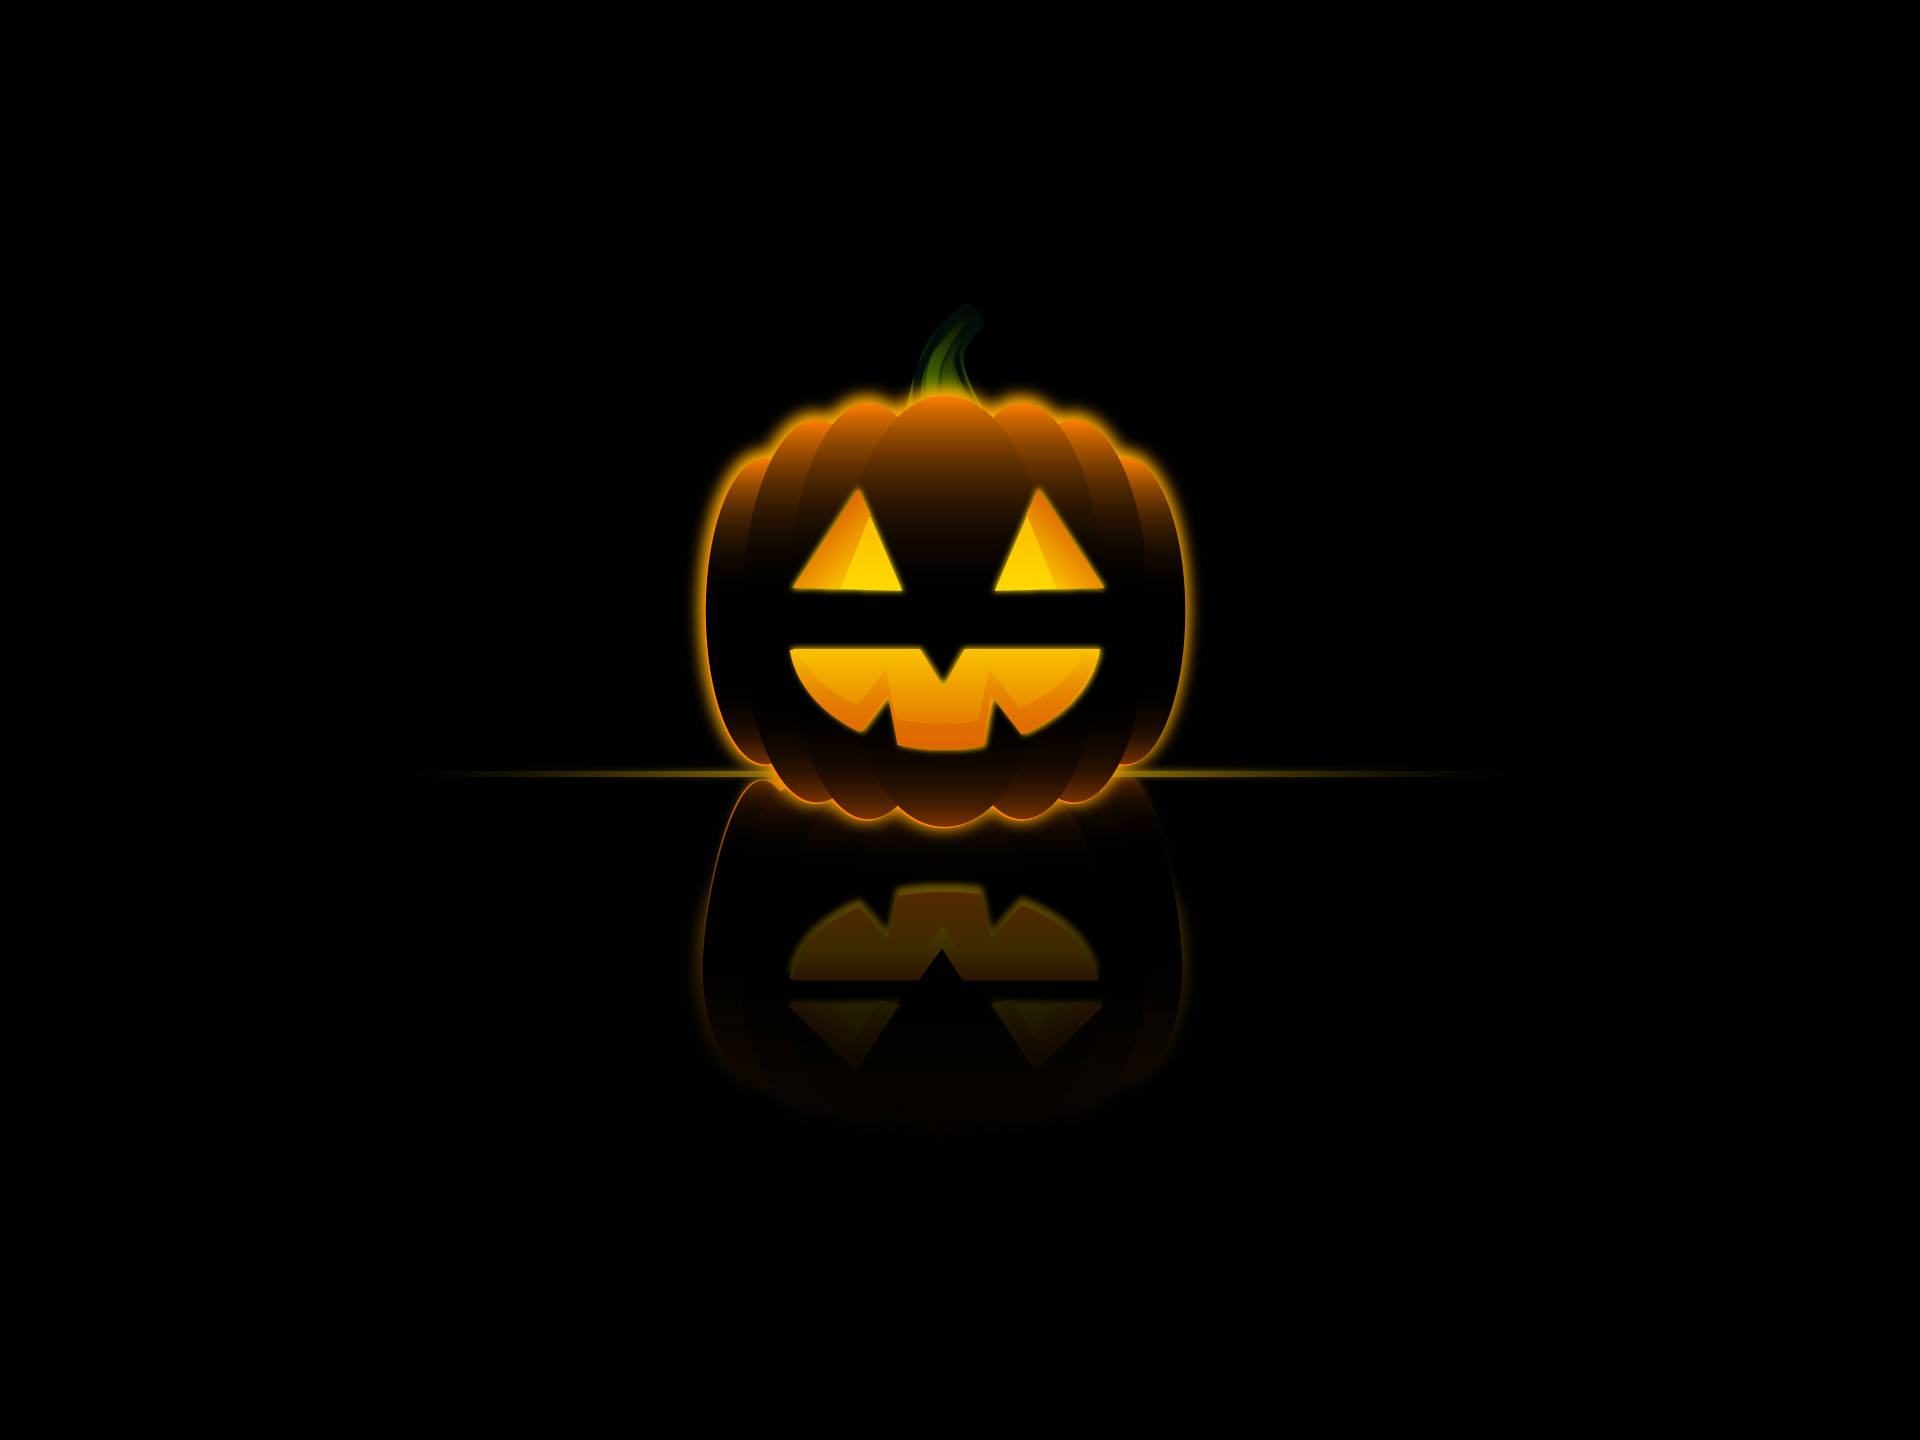 Halloween night's spooky sillhouette, a shining pumpkin! Wallpaper